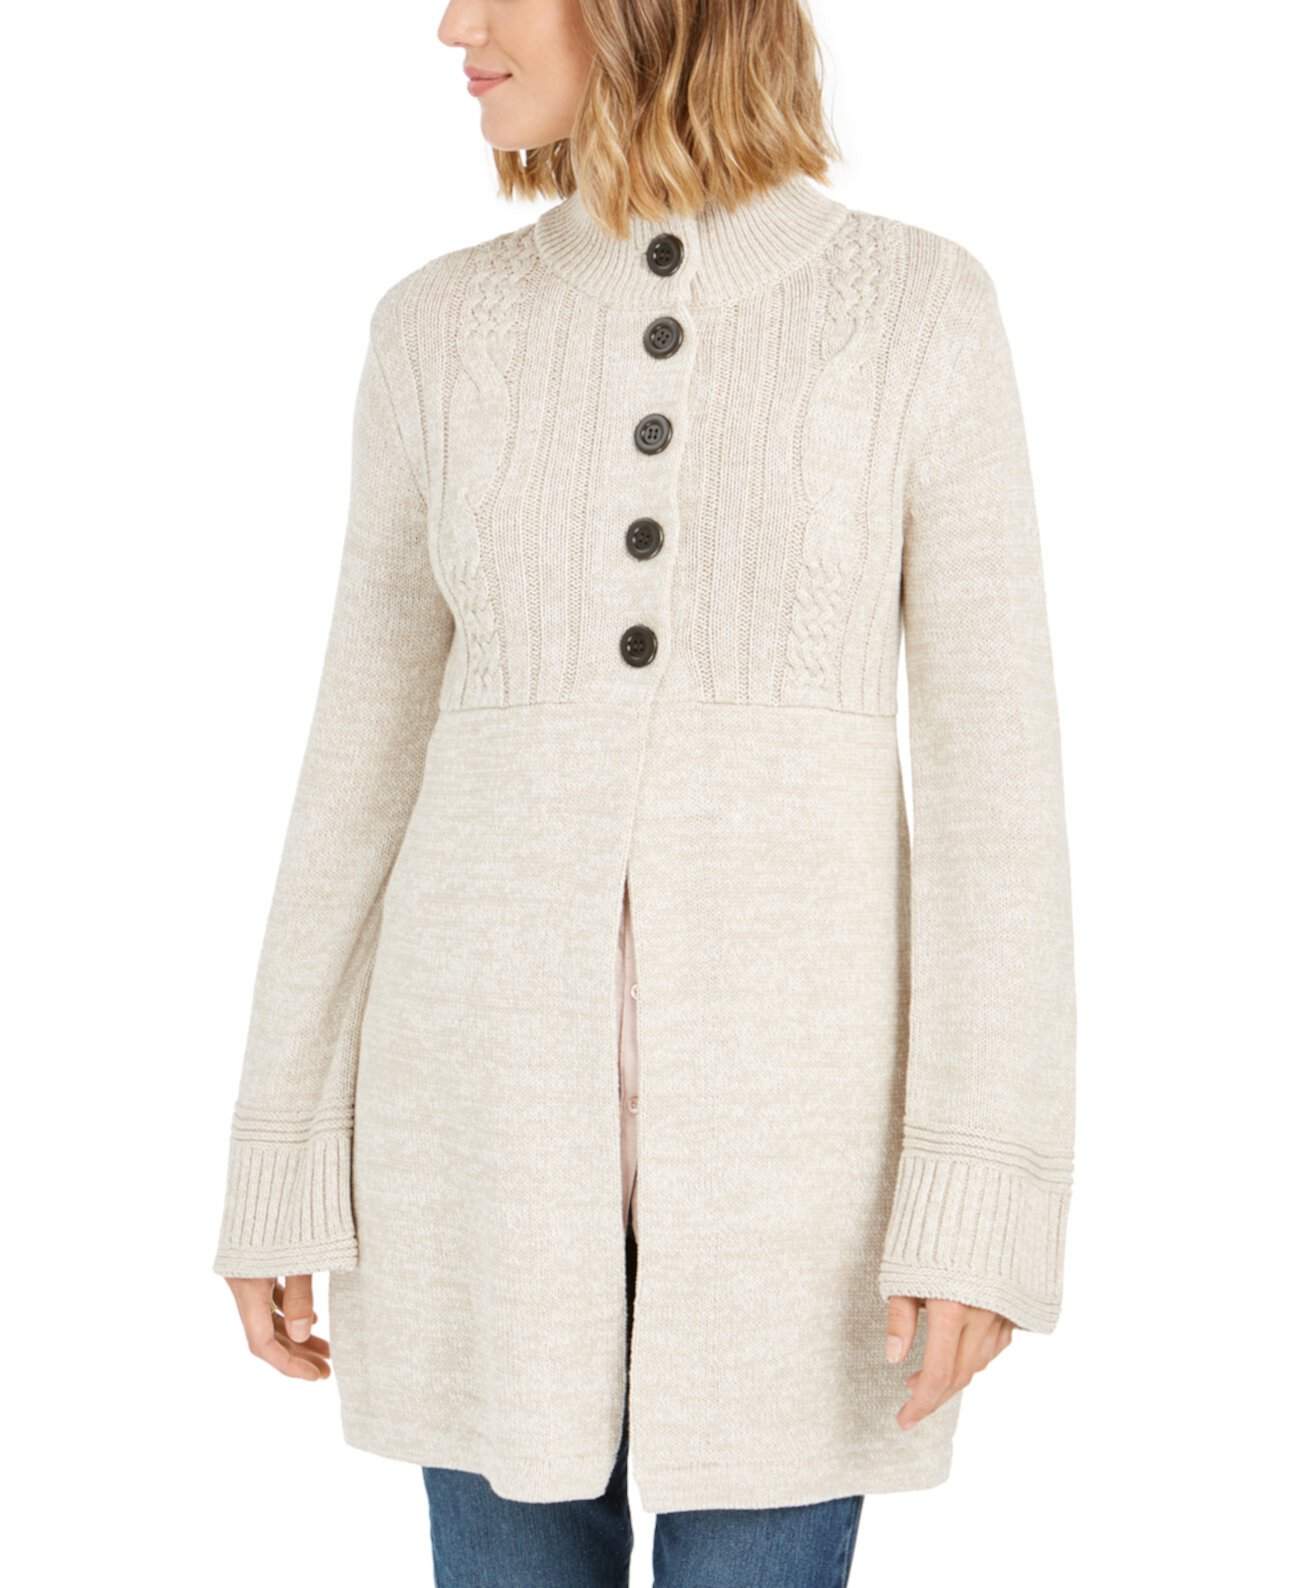 Пальто-свитер вязанной вязки, созданное для Macy's Style & Co